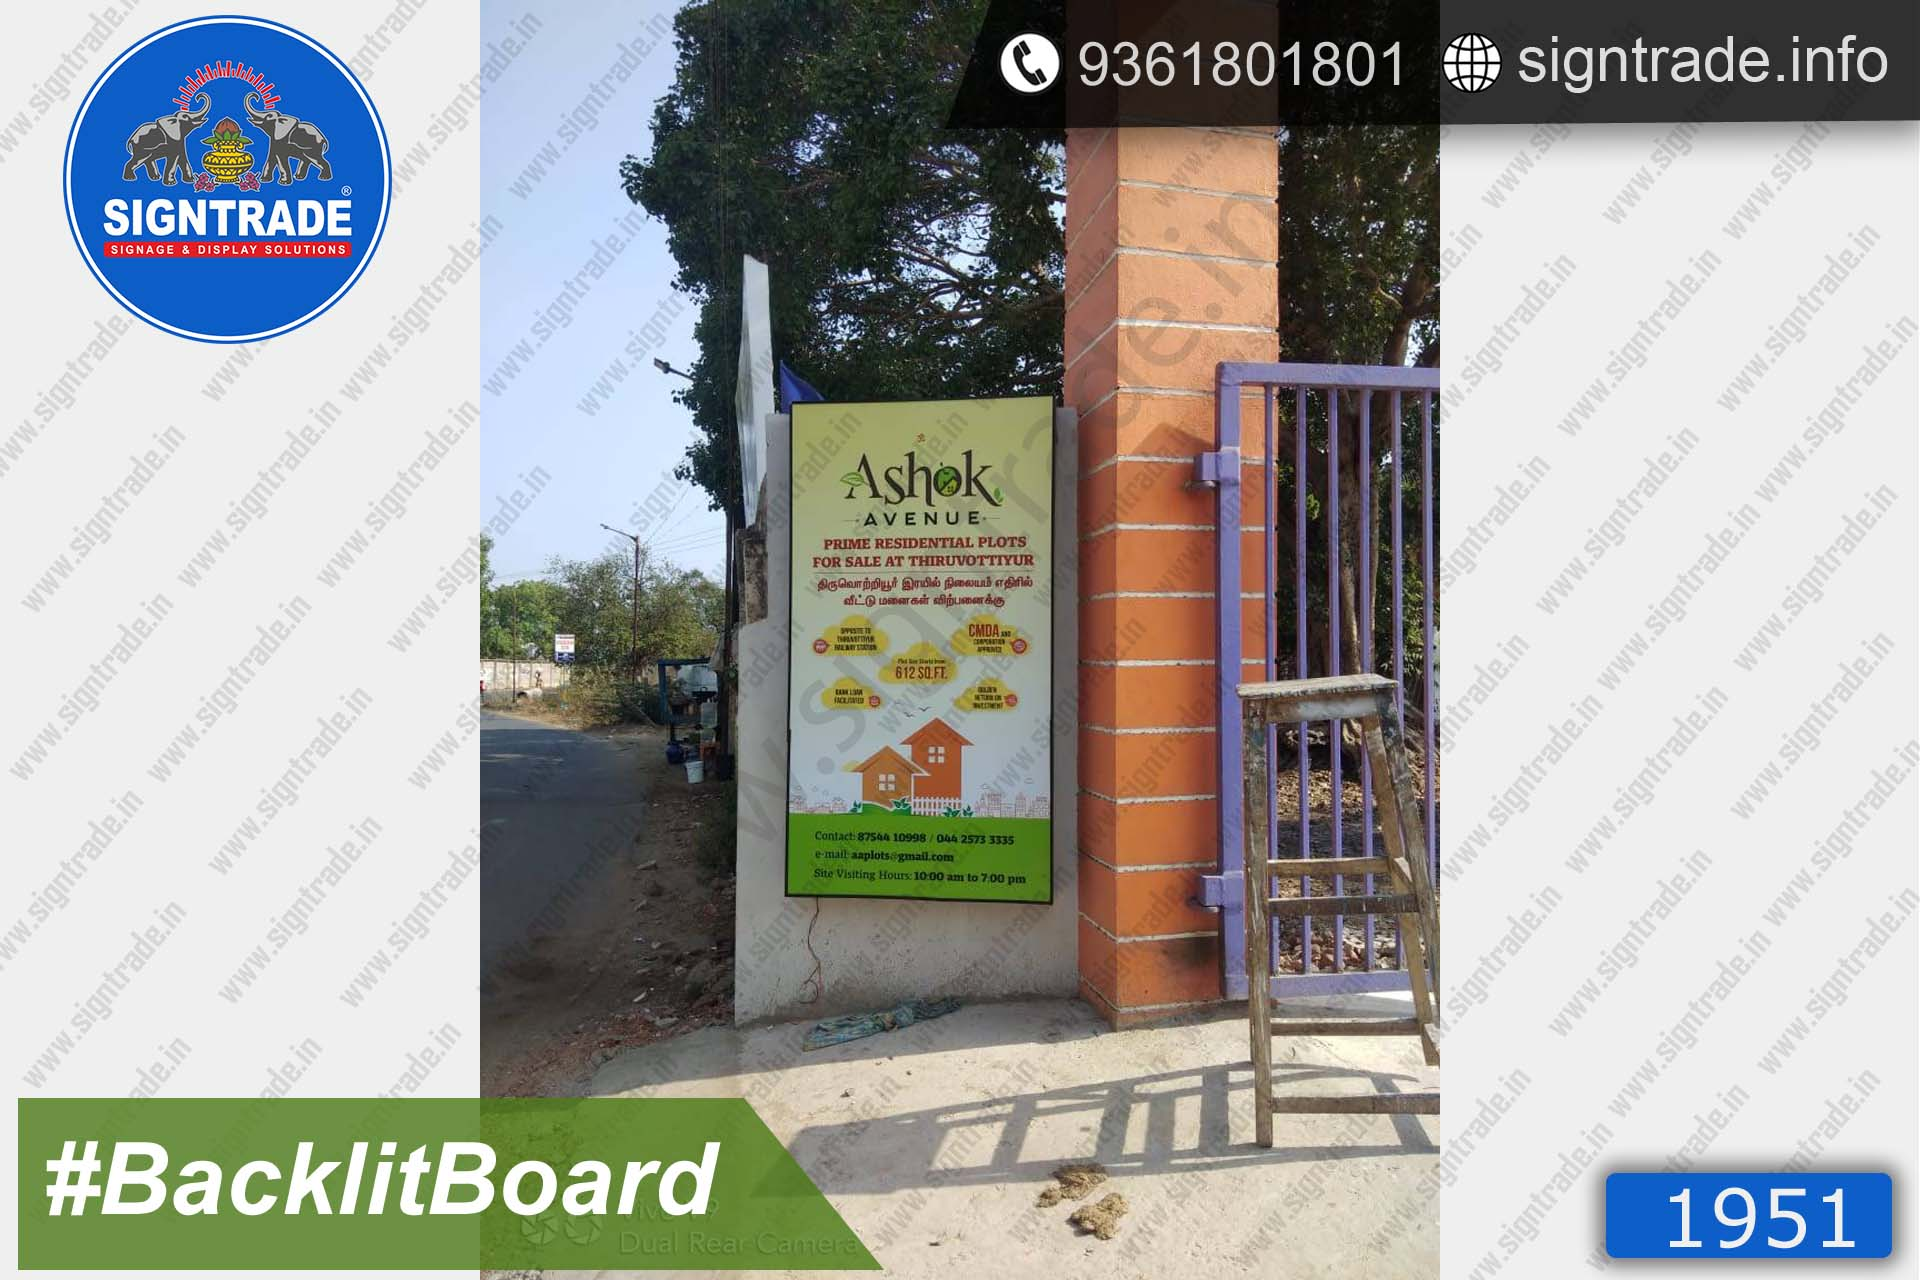 Ashok Avenue Backlit Board